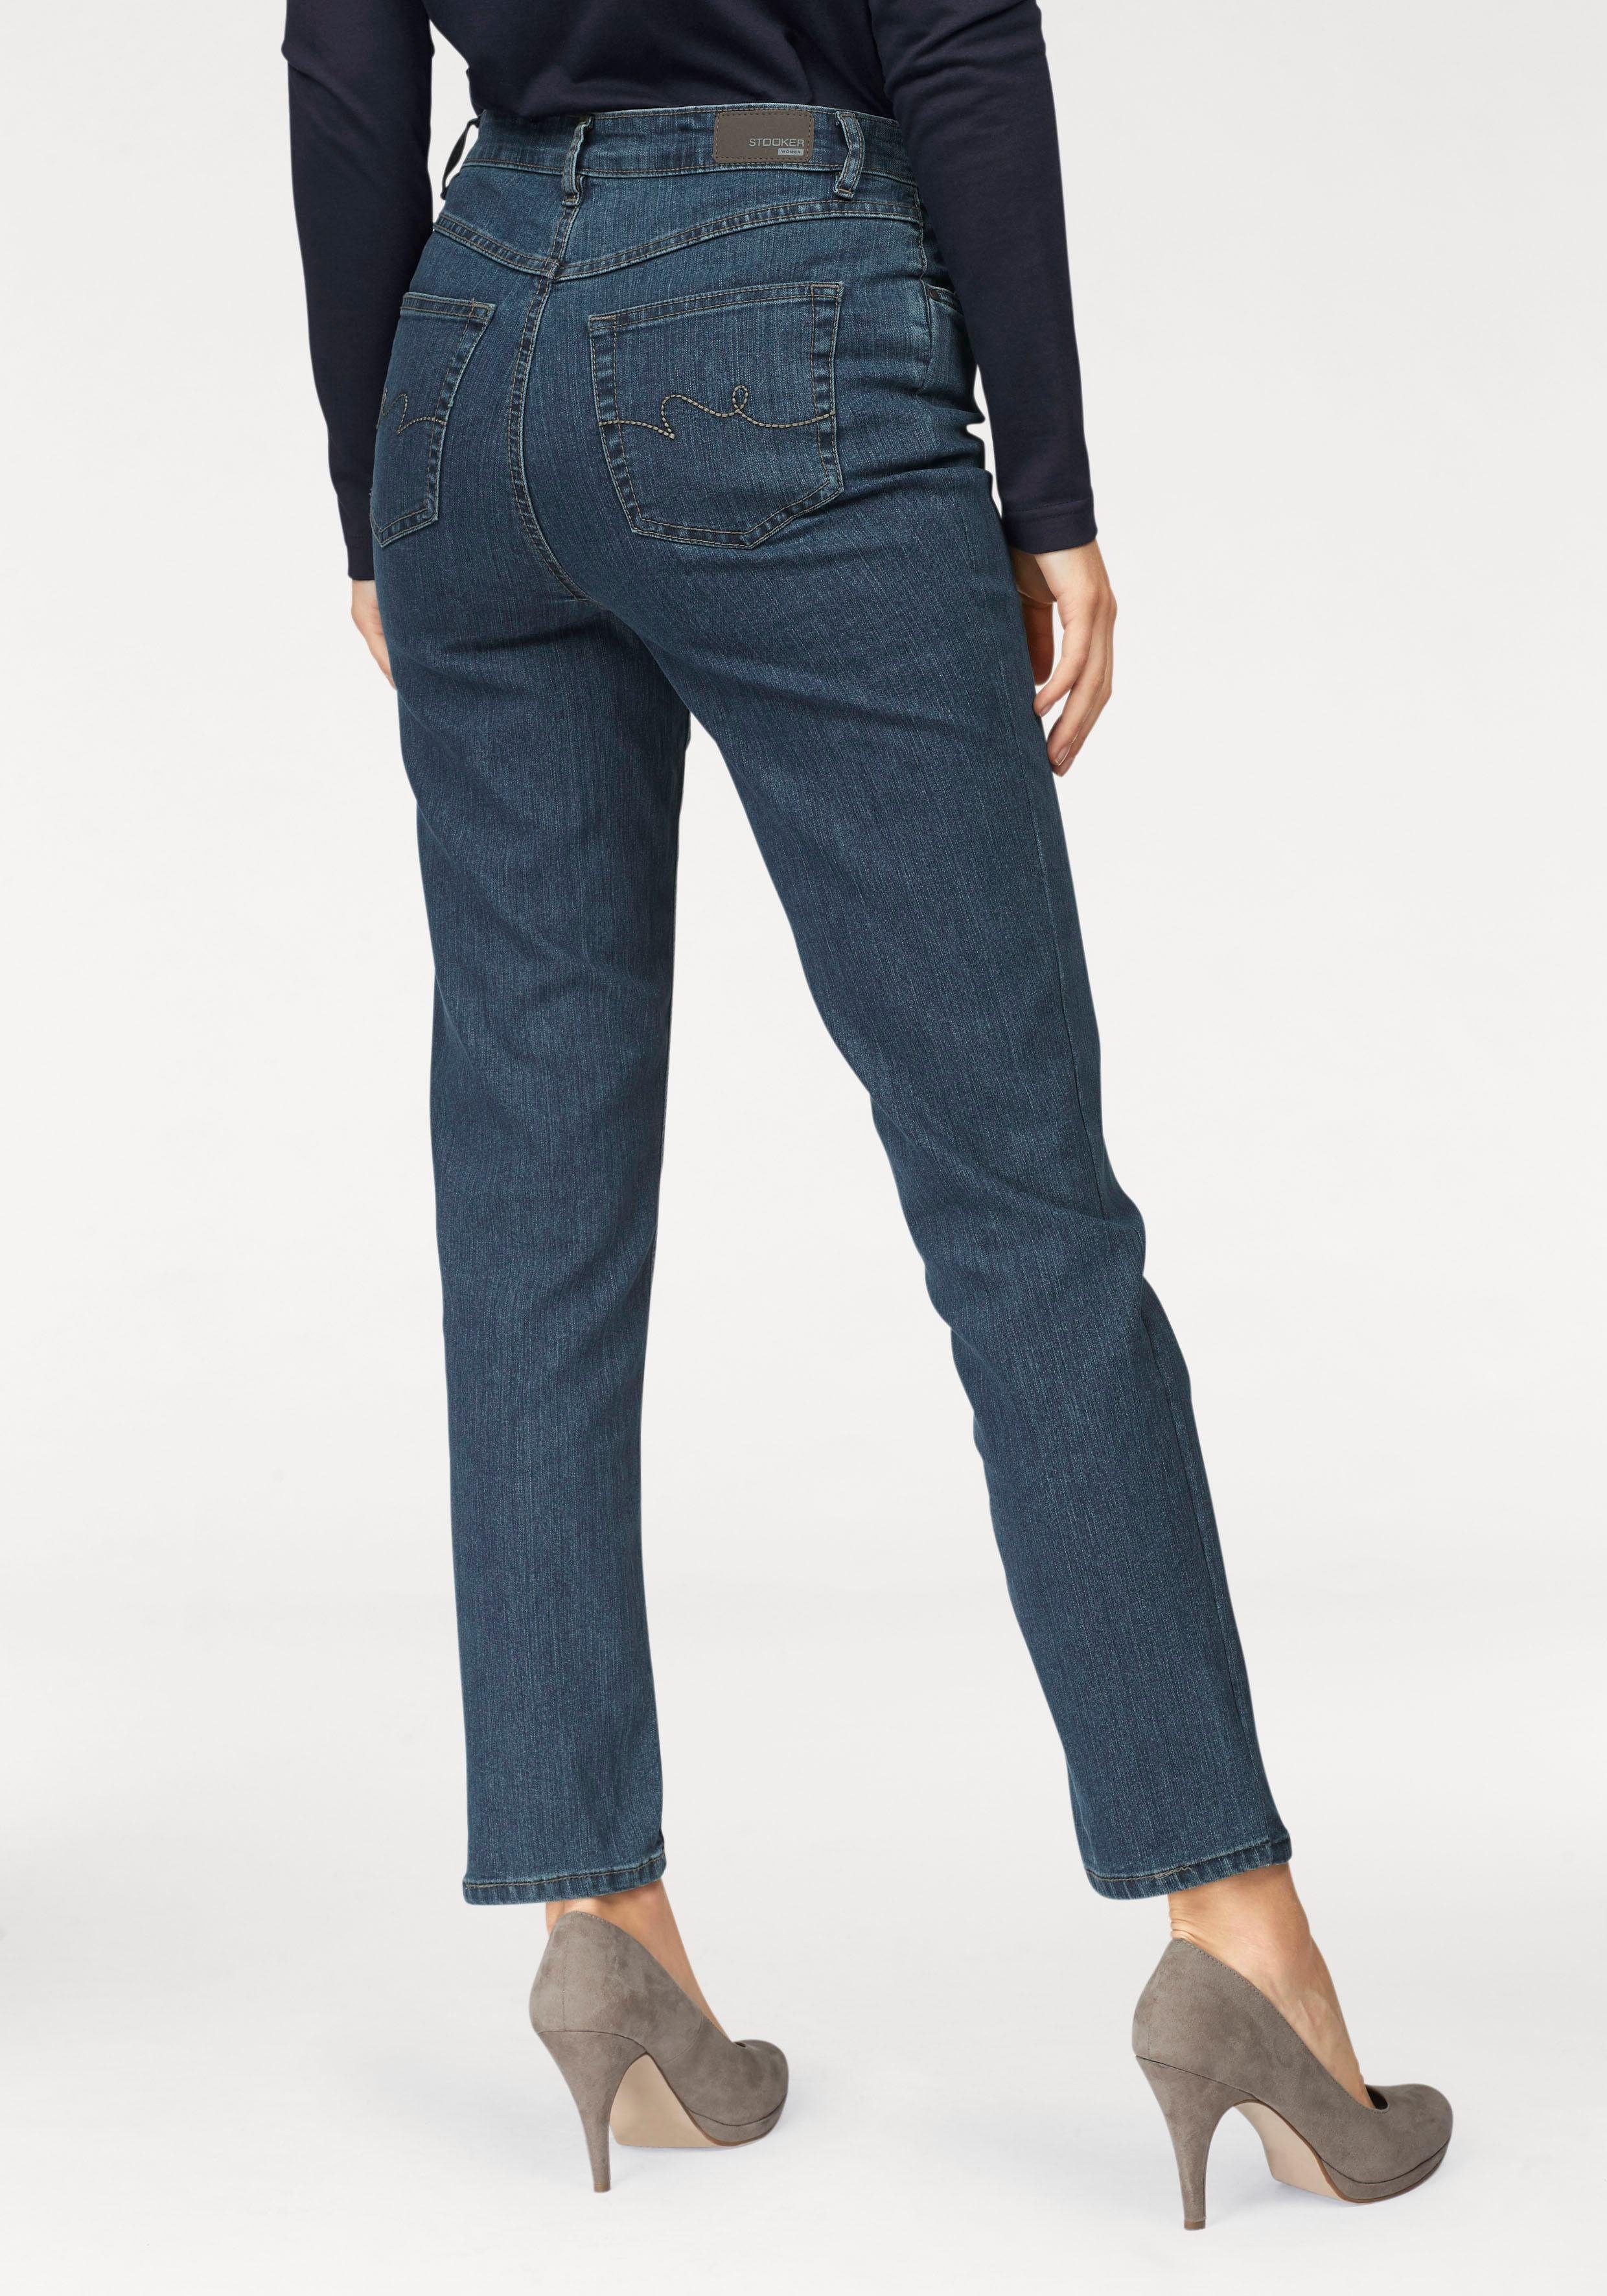 Stooker Women NU 15% KORTING: STOOKER WOMEN stretch jeans